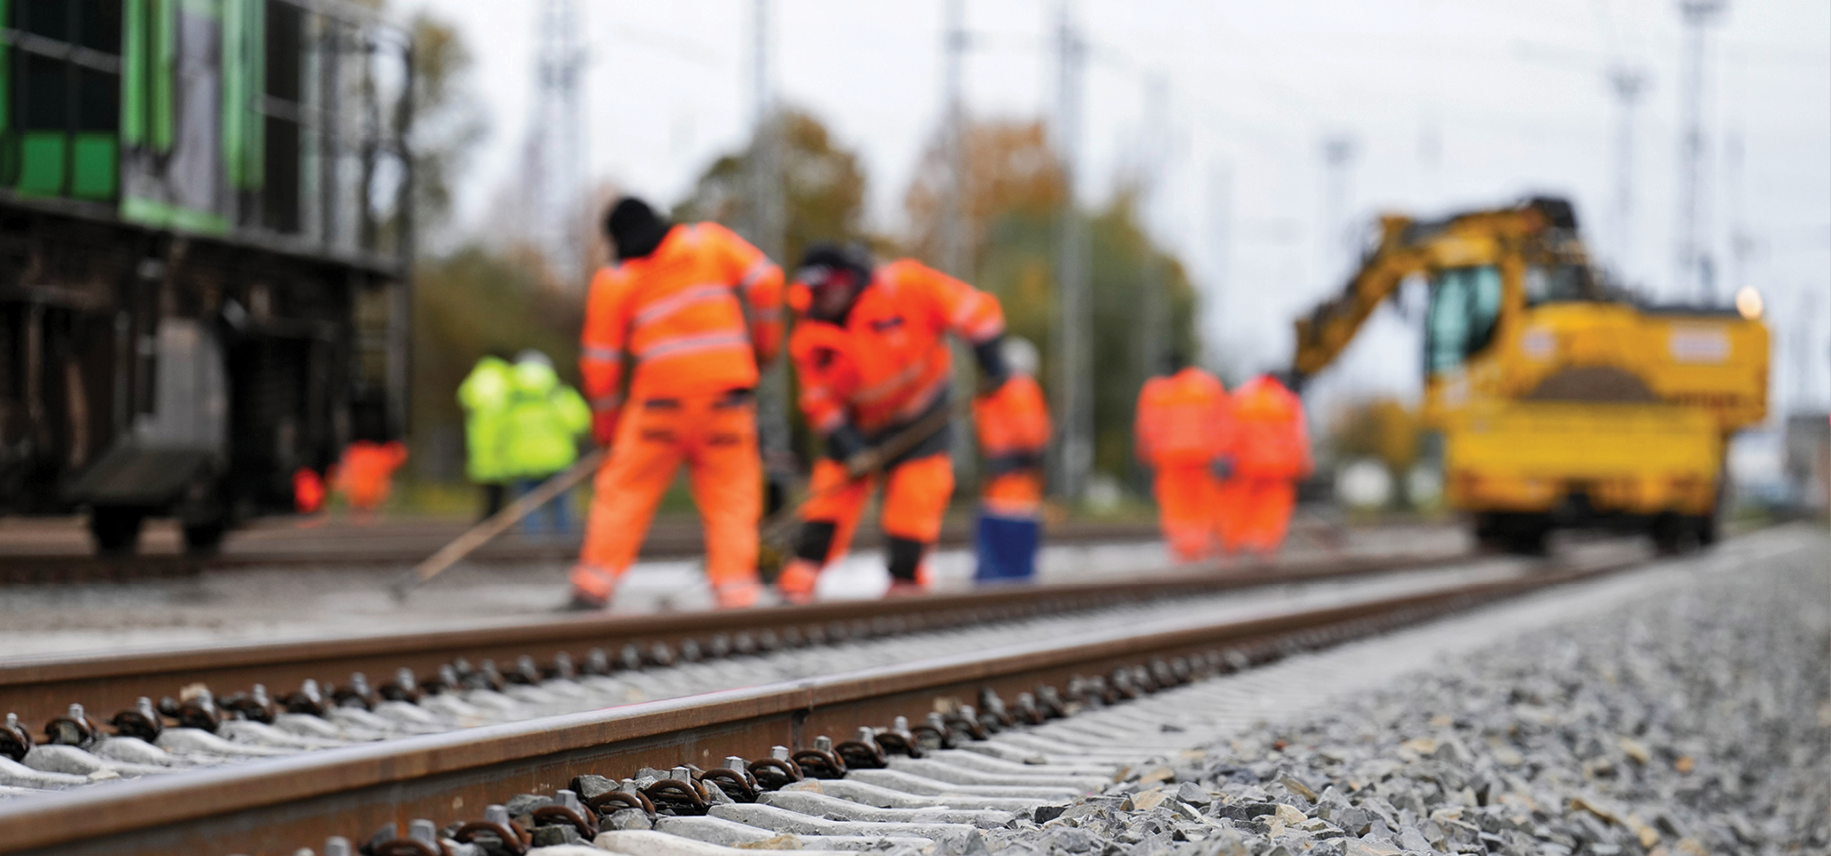 Gleisarbeiten in Rostock: Eine höhere gesellschaftliche Akzeptanz von Infrastrukturvorhaben ist wünschenswert, um Zulassungsprozesse zu beschleunigen